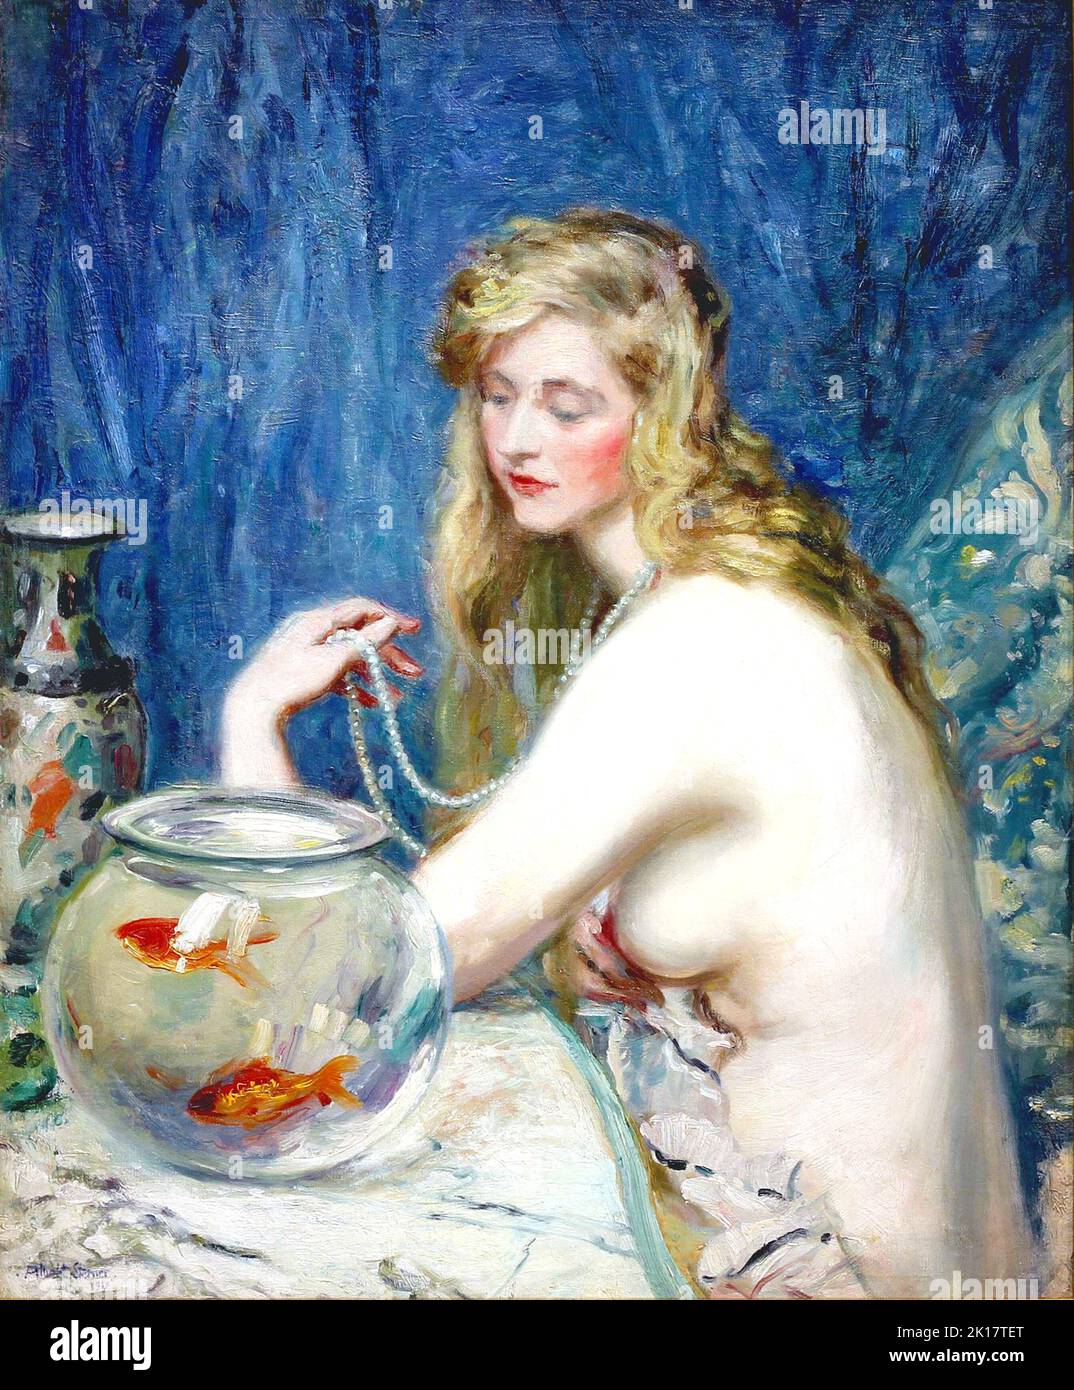 Albert Edward Serner - Un desnudo con un tazón de Goldfish - 1919 Foto de stock